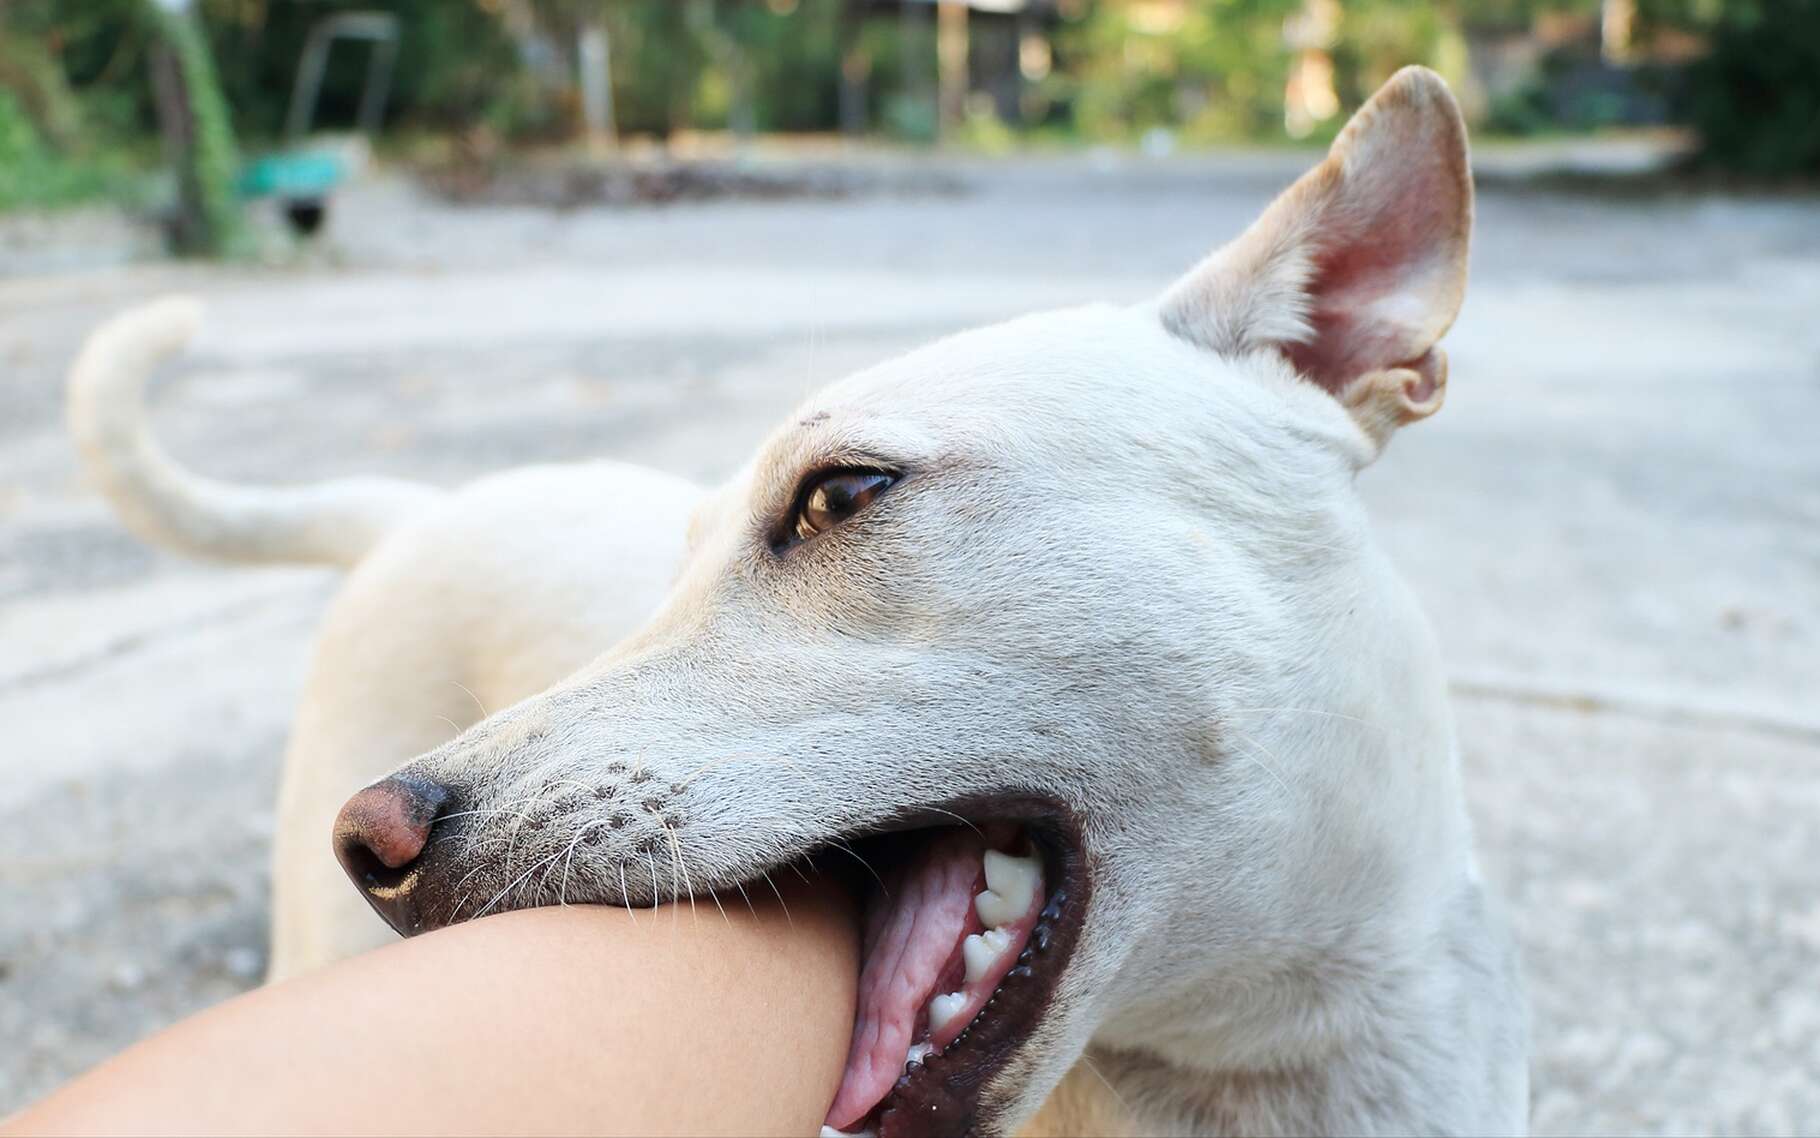 La morsure de chien peut transmettre la rage, une maladie due au virus rabique. © meawtai99, Shutterstock